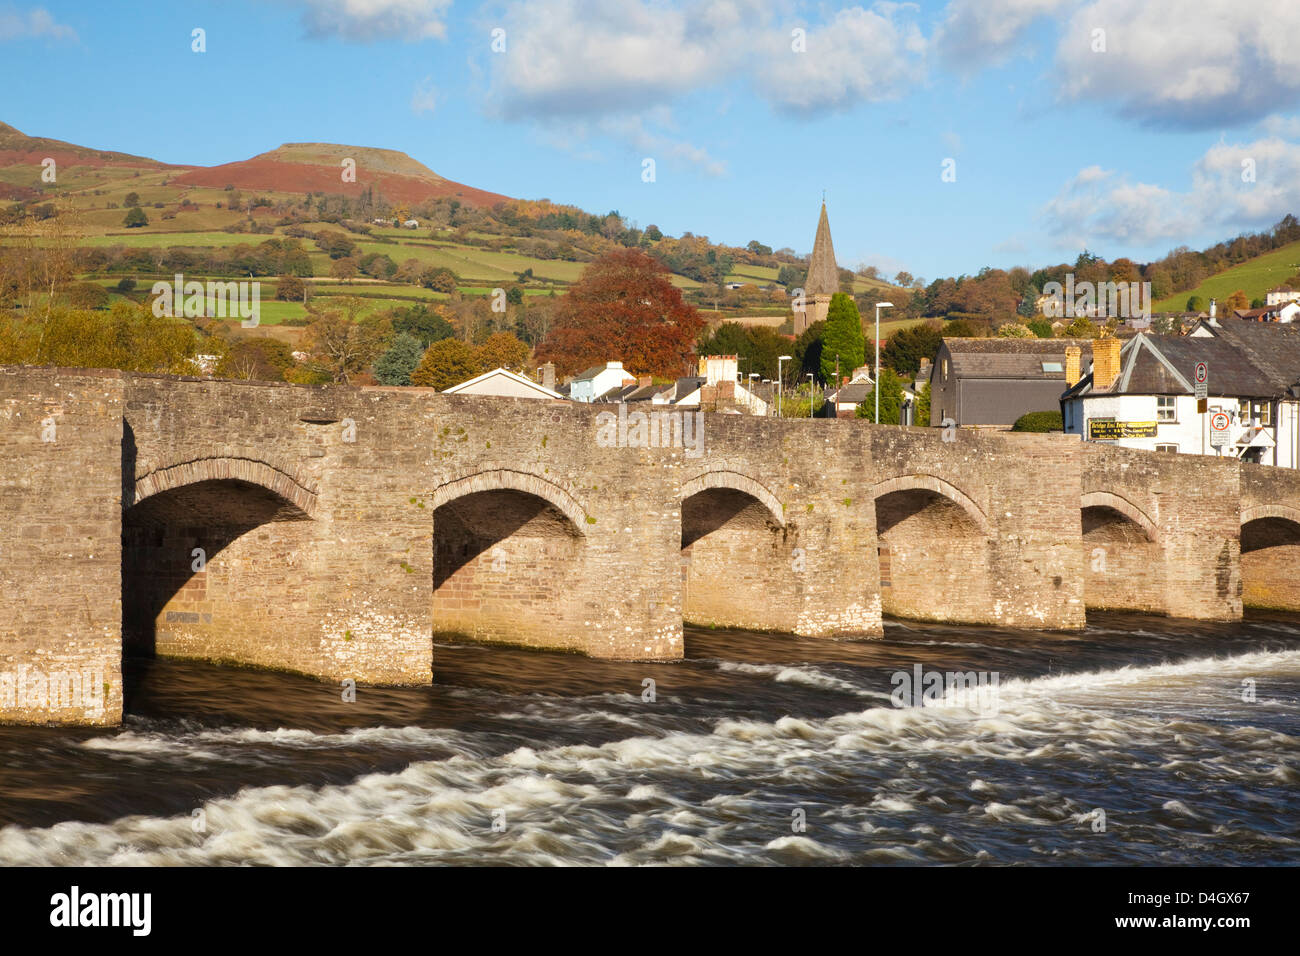 Pont sur la rivière Usk, Crickhowell, Powys, Wales, UK Banque D'Images